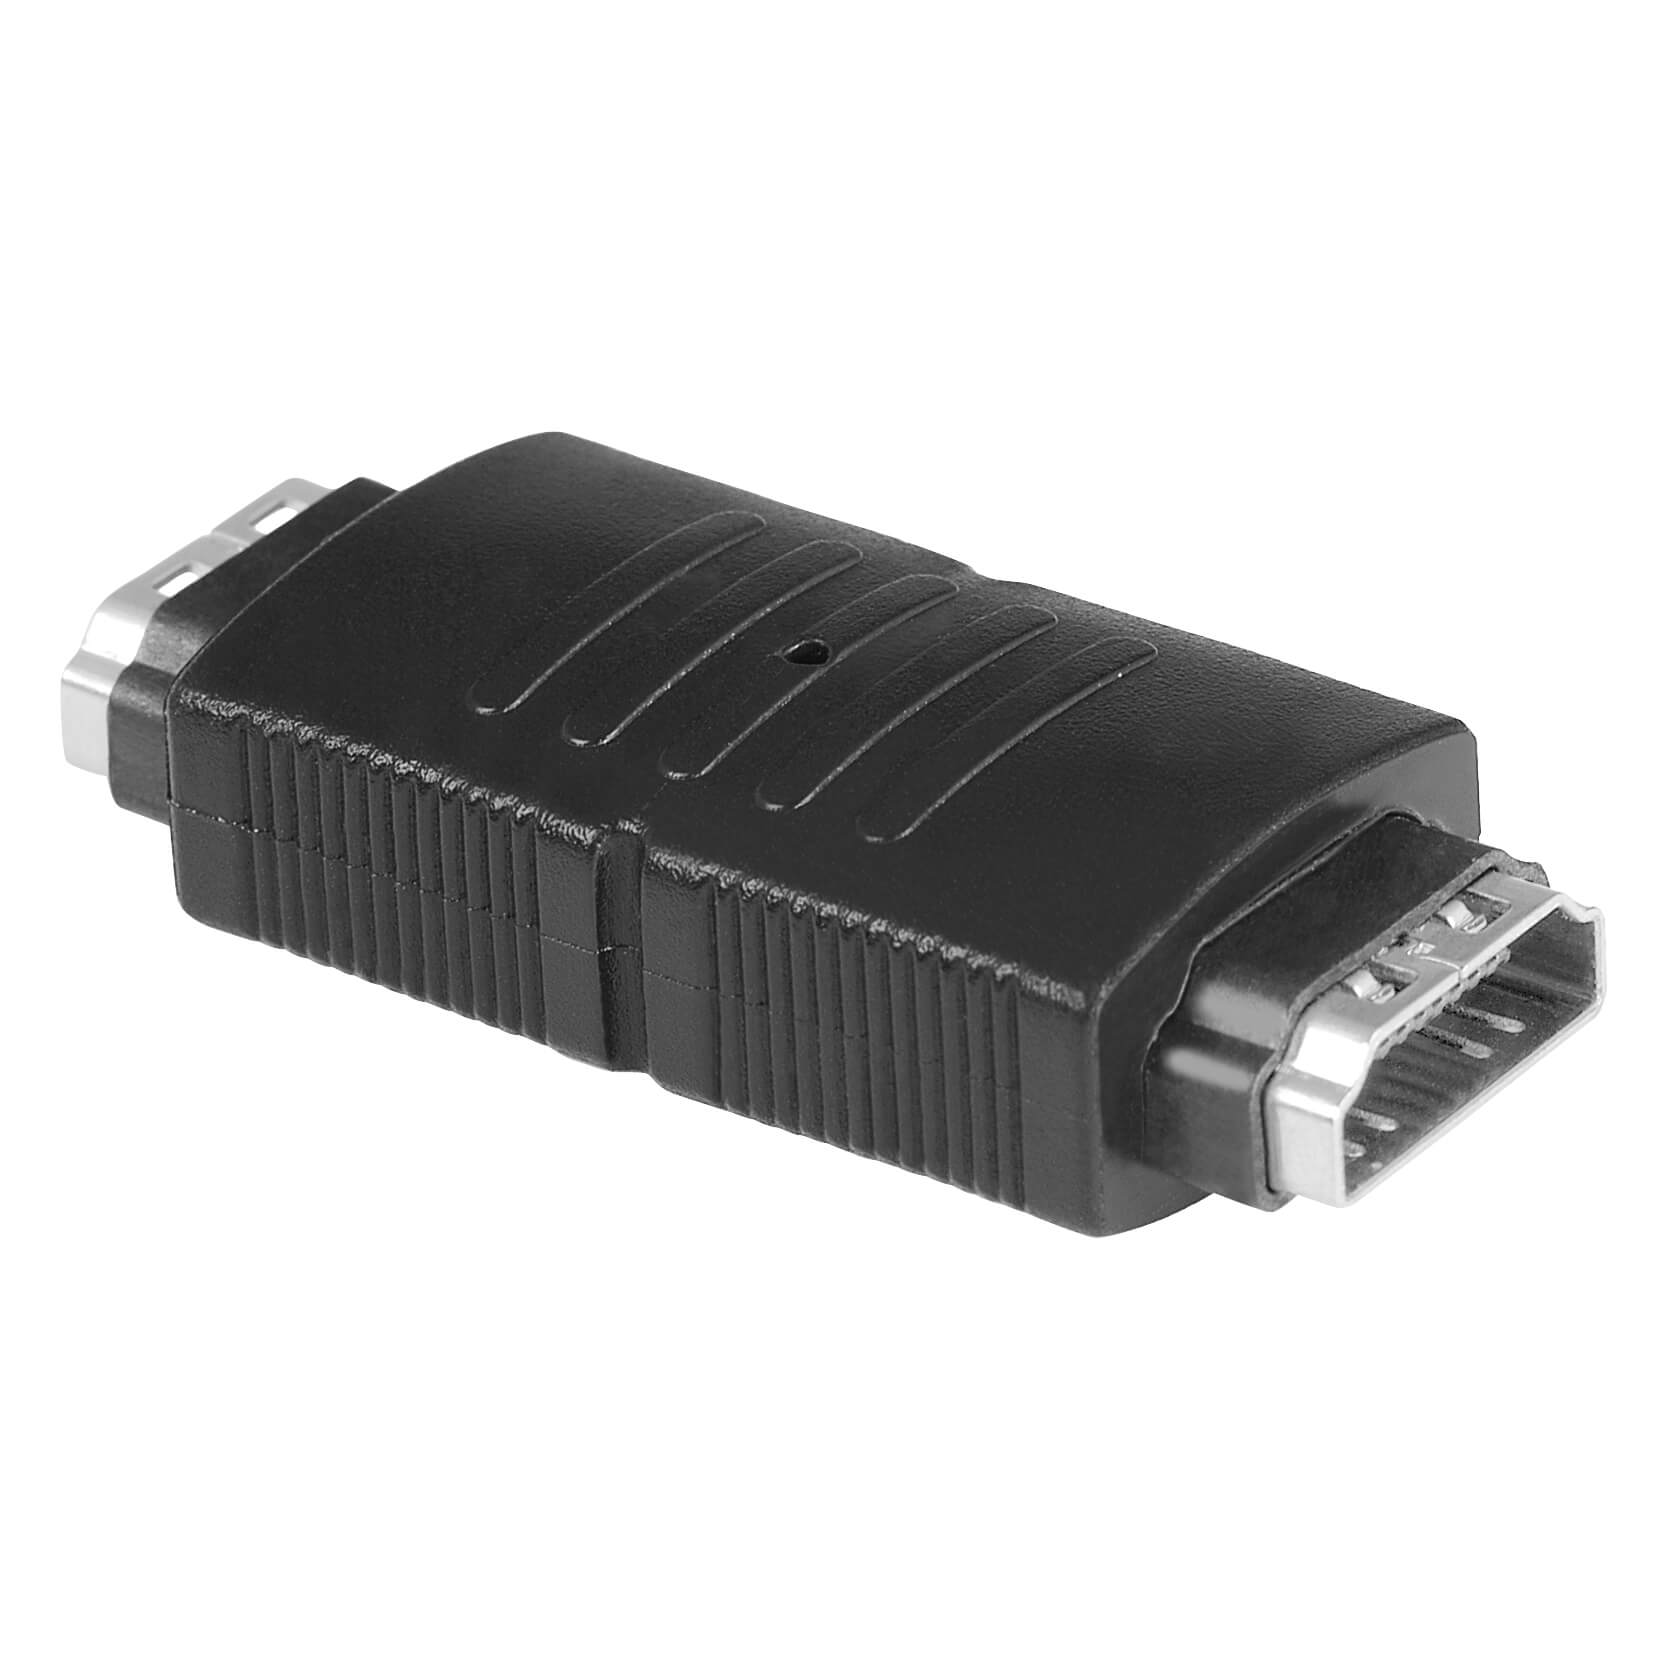 HDMI™ Adapter, socket - socke t